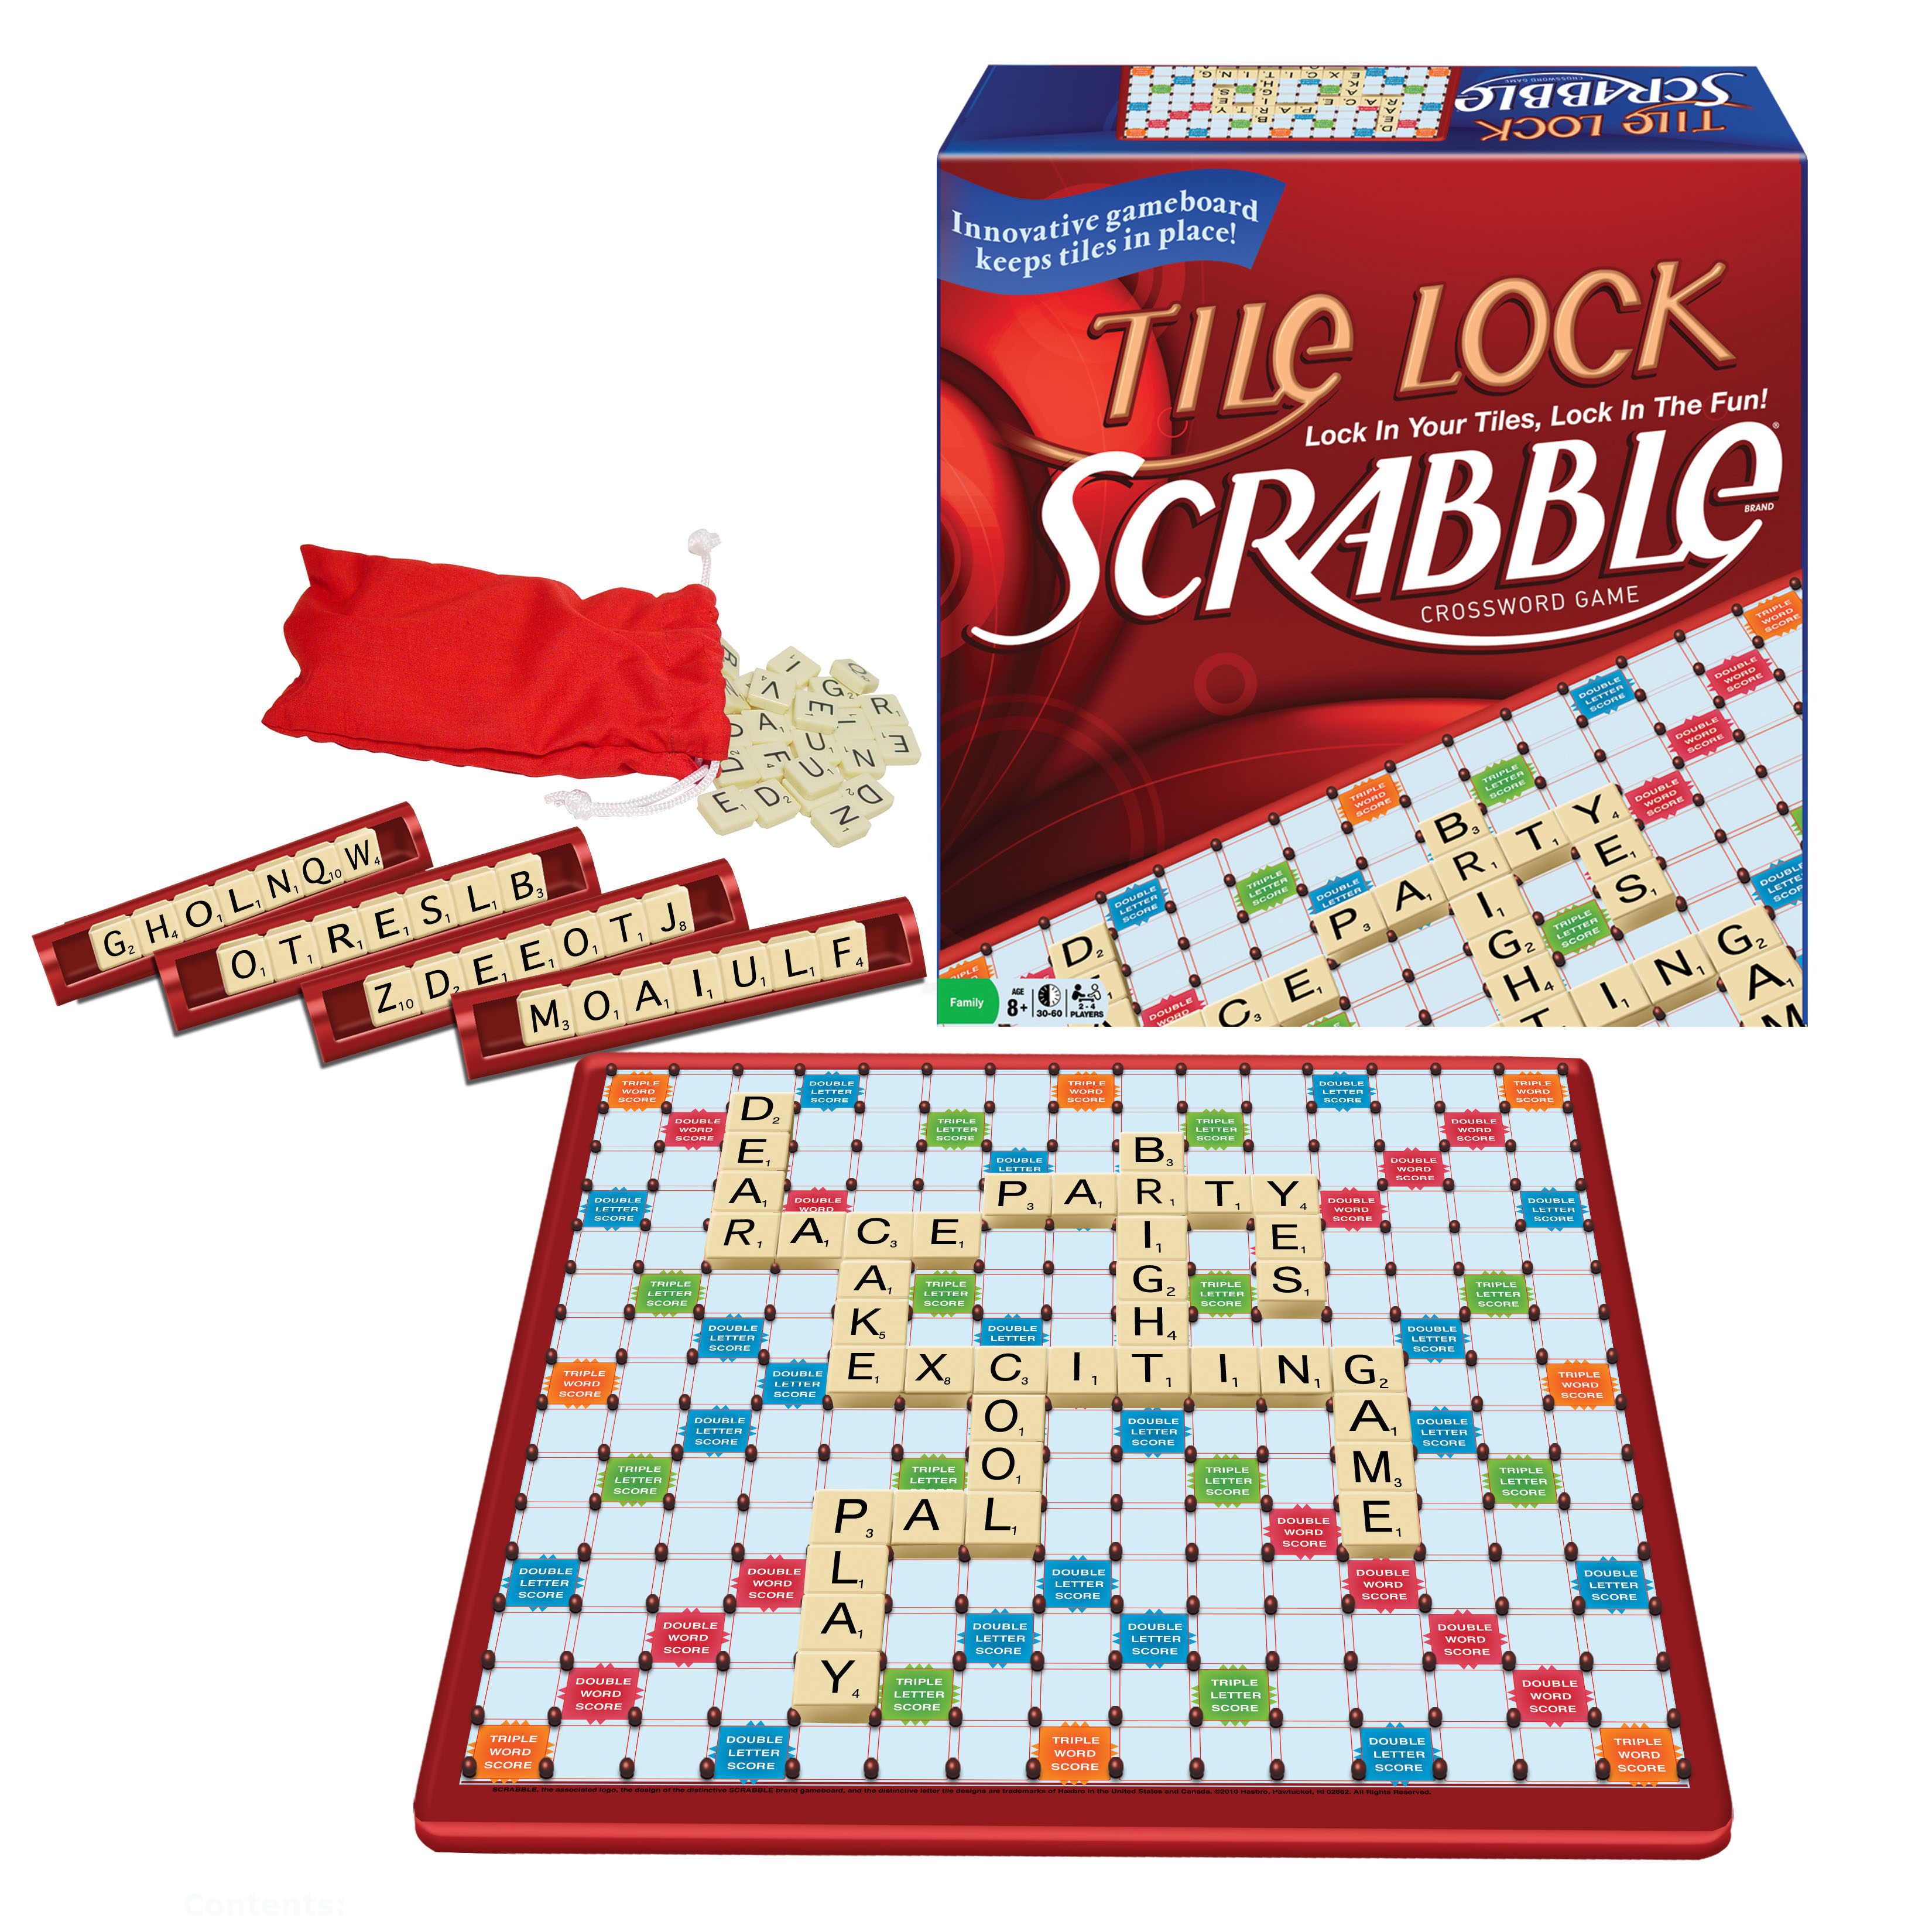 Winning Moves Games Tile Lock Scrabble